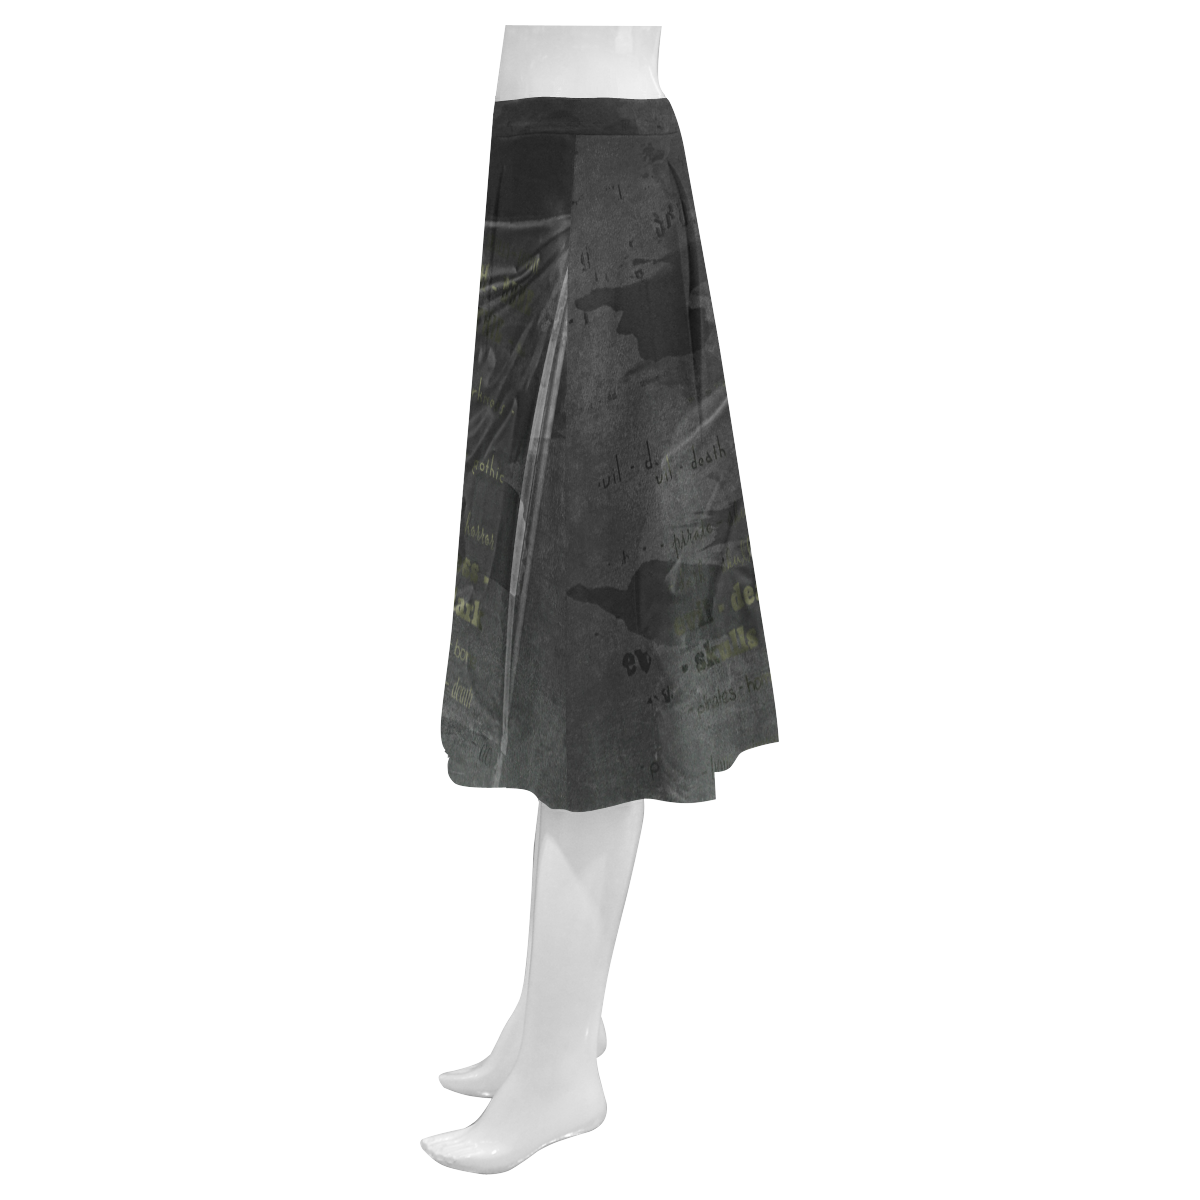 Vintage Skull Pirates Flag Mnemosyne Women's Crepe Skirt (Model D16)